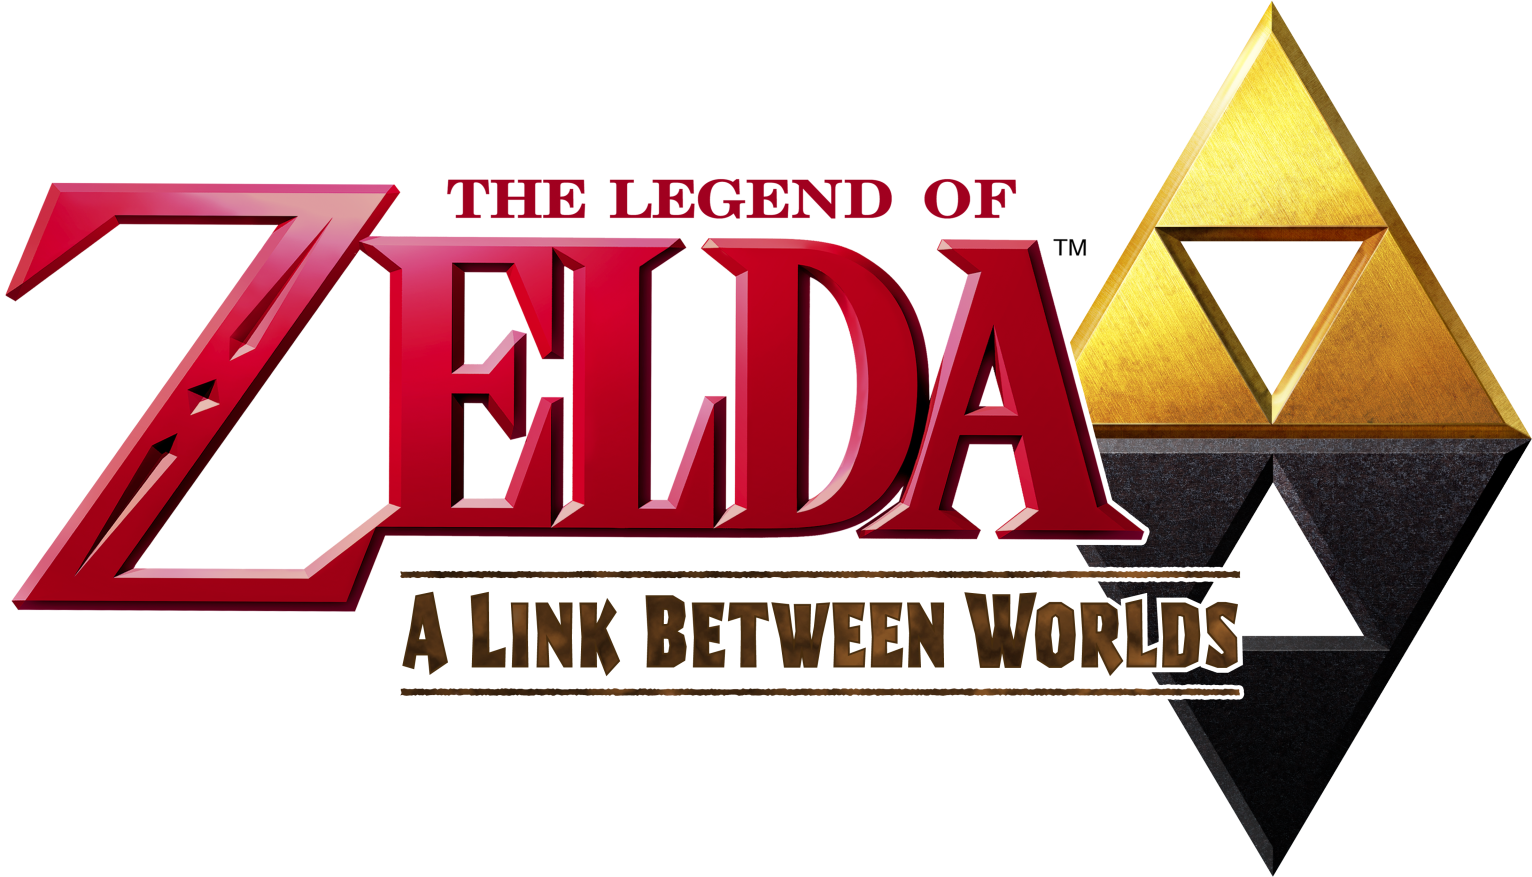 The Legend Of Zelda   A Link Between Worlds (Logo).png - The Legend Of Zelda, Transparent background PNG HD thumbnail